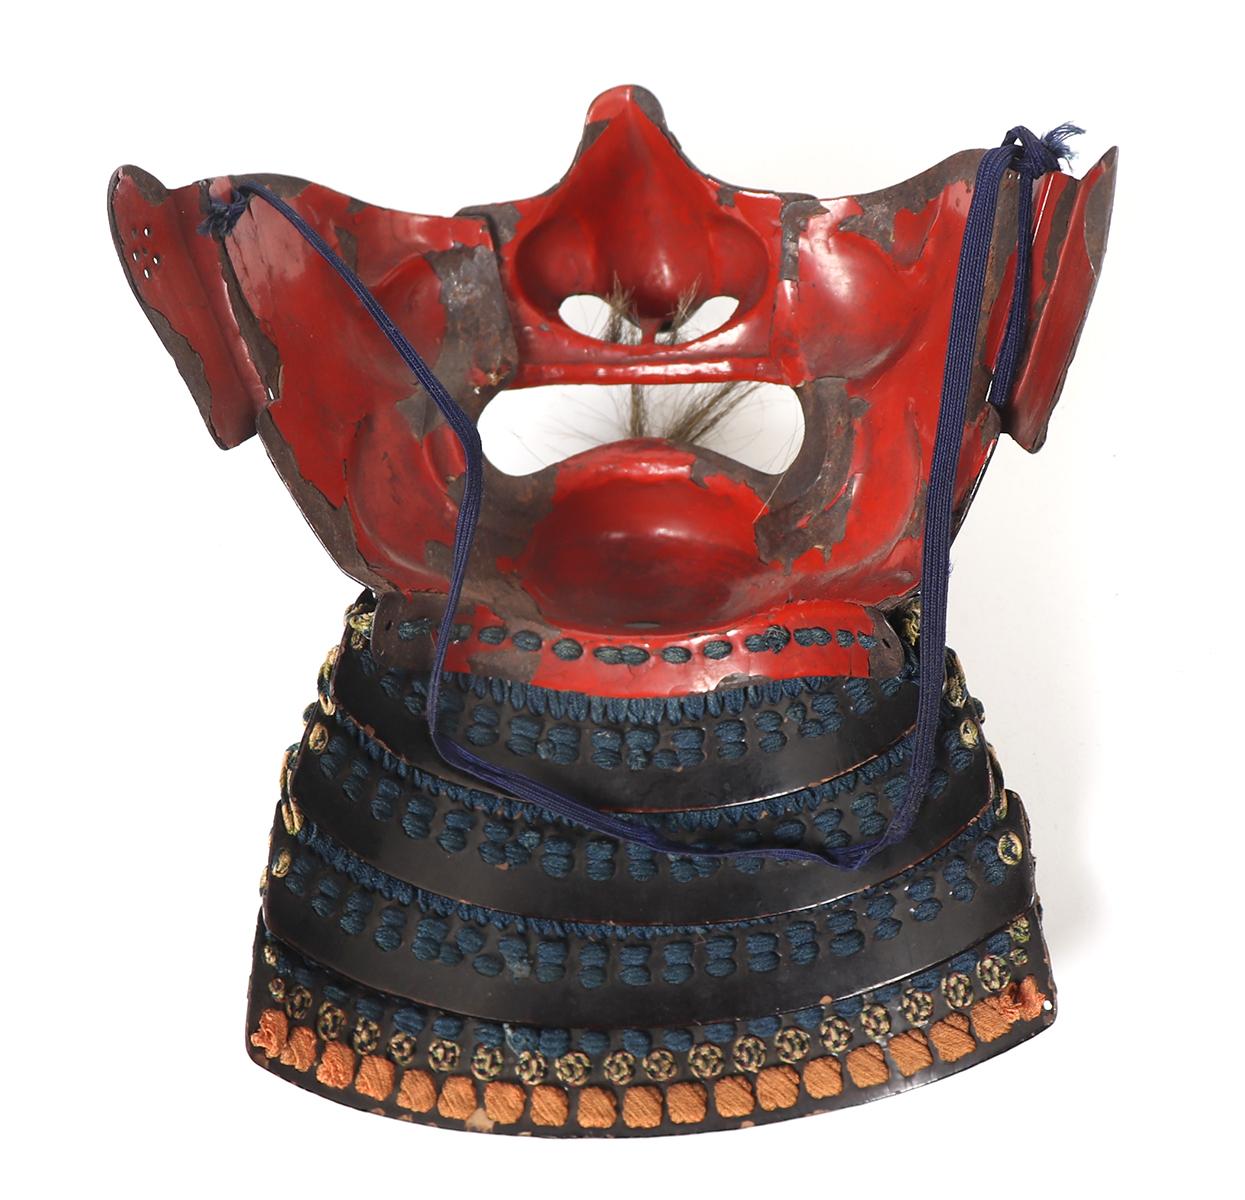 High Quality Composite Japanese Samurai Armor, Edo Period 1650-1800